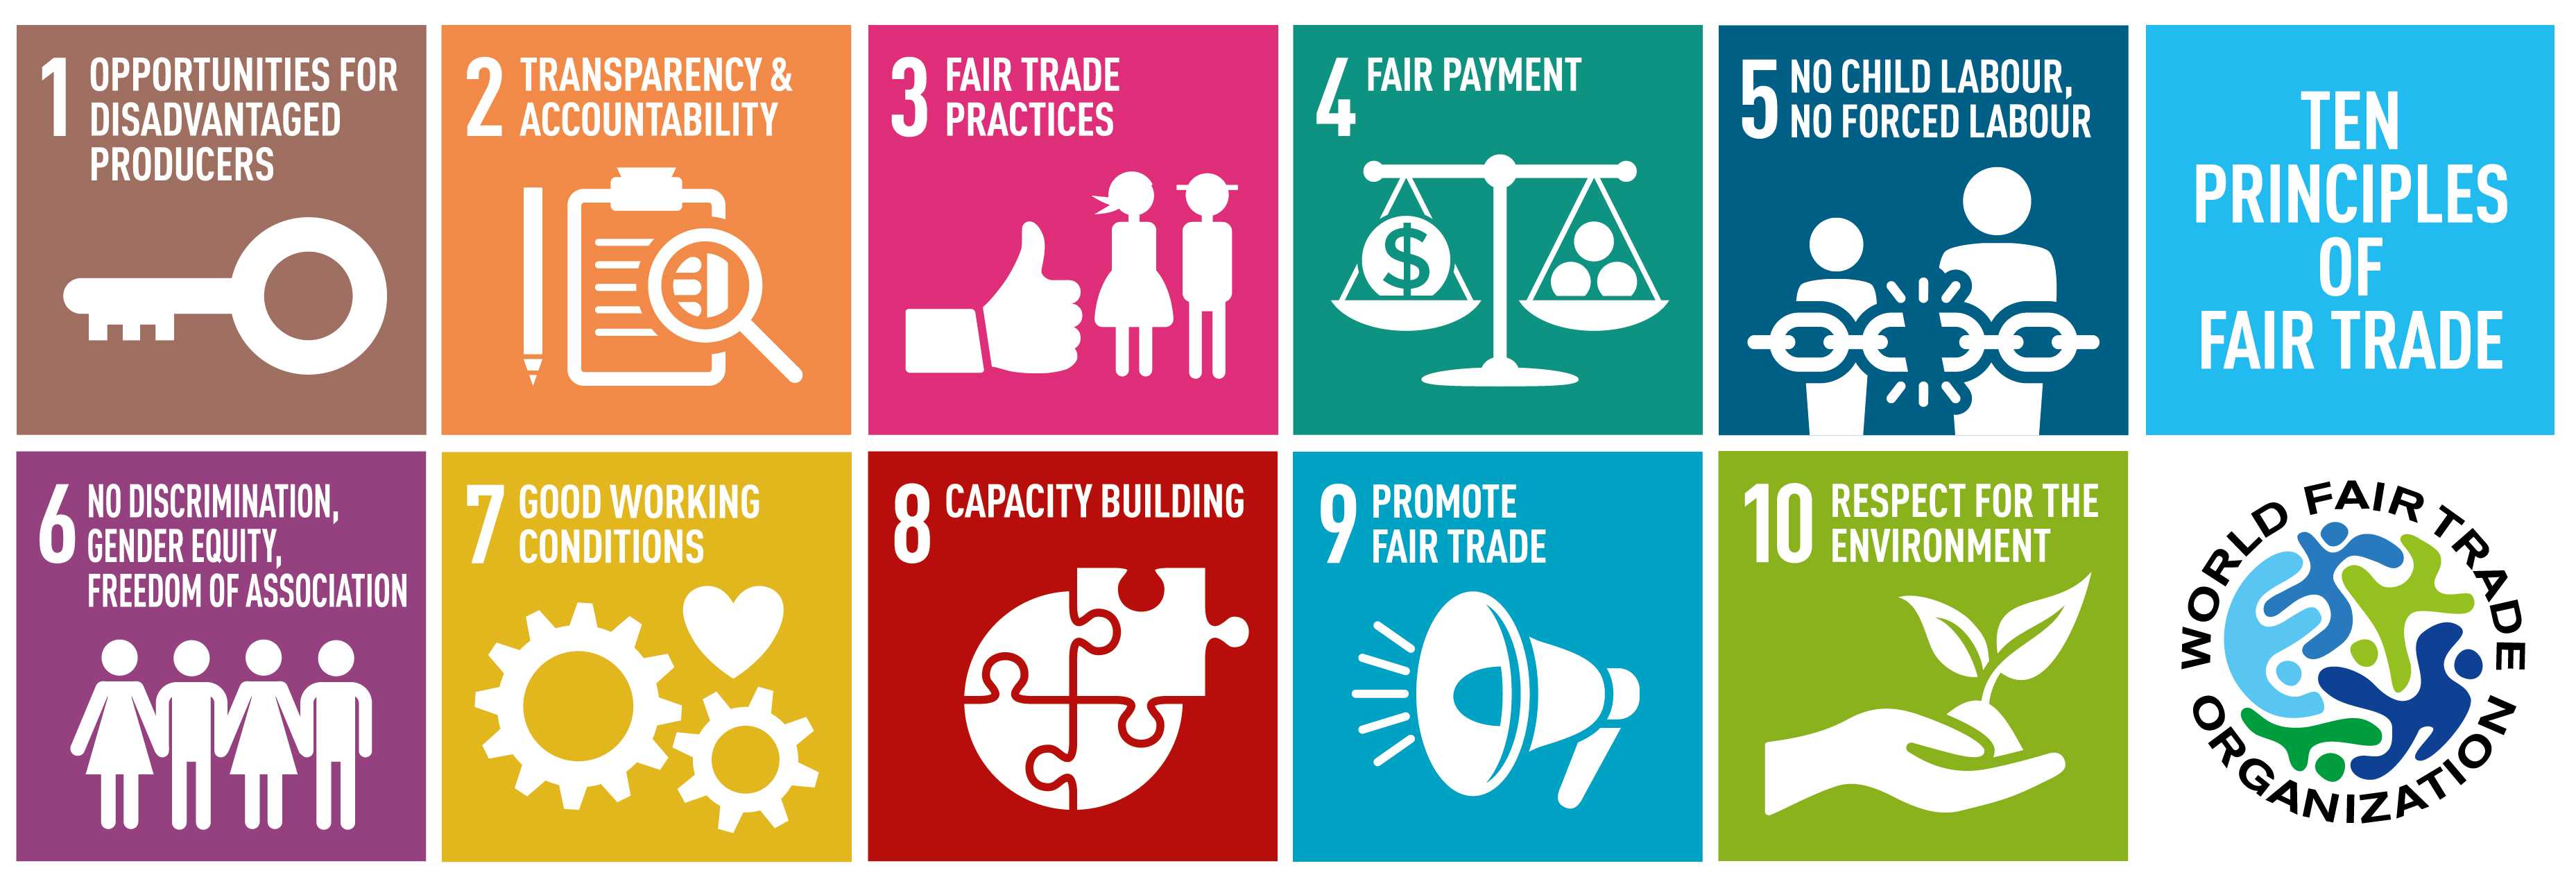 WFTO - 10 Principles of fair trade